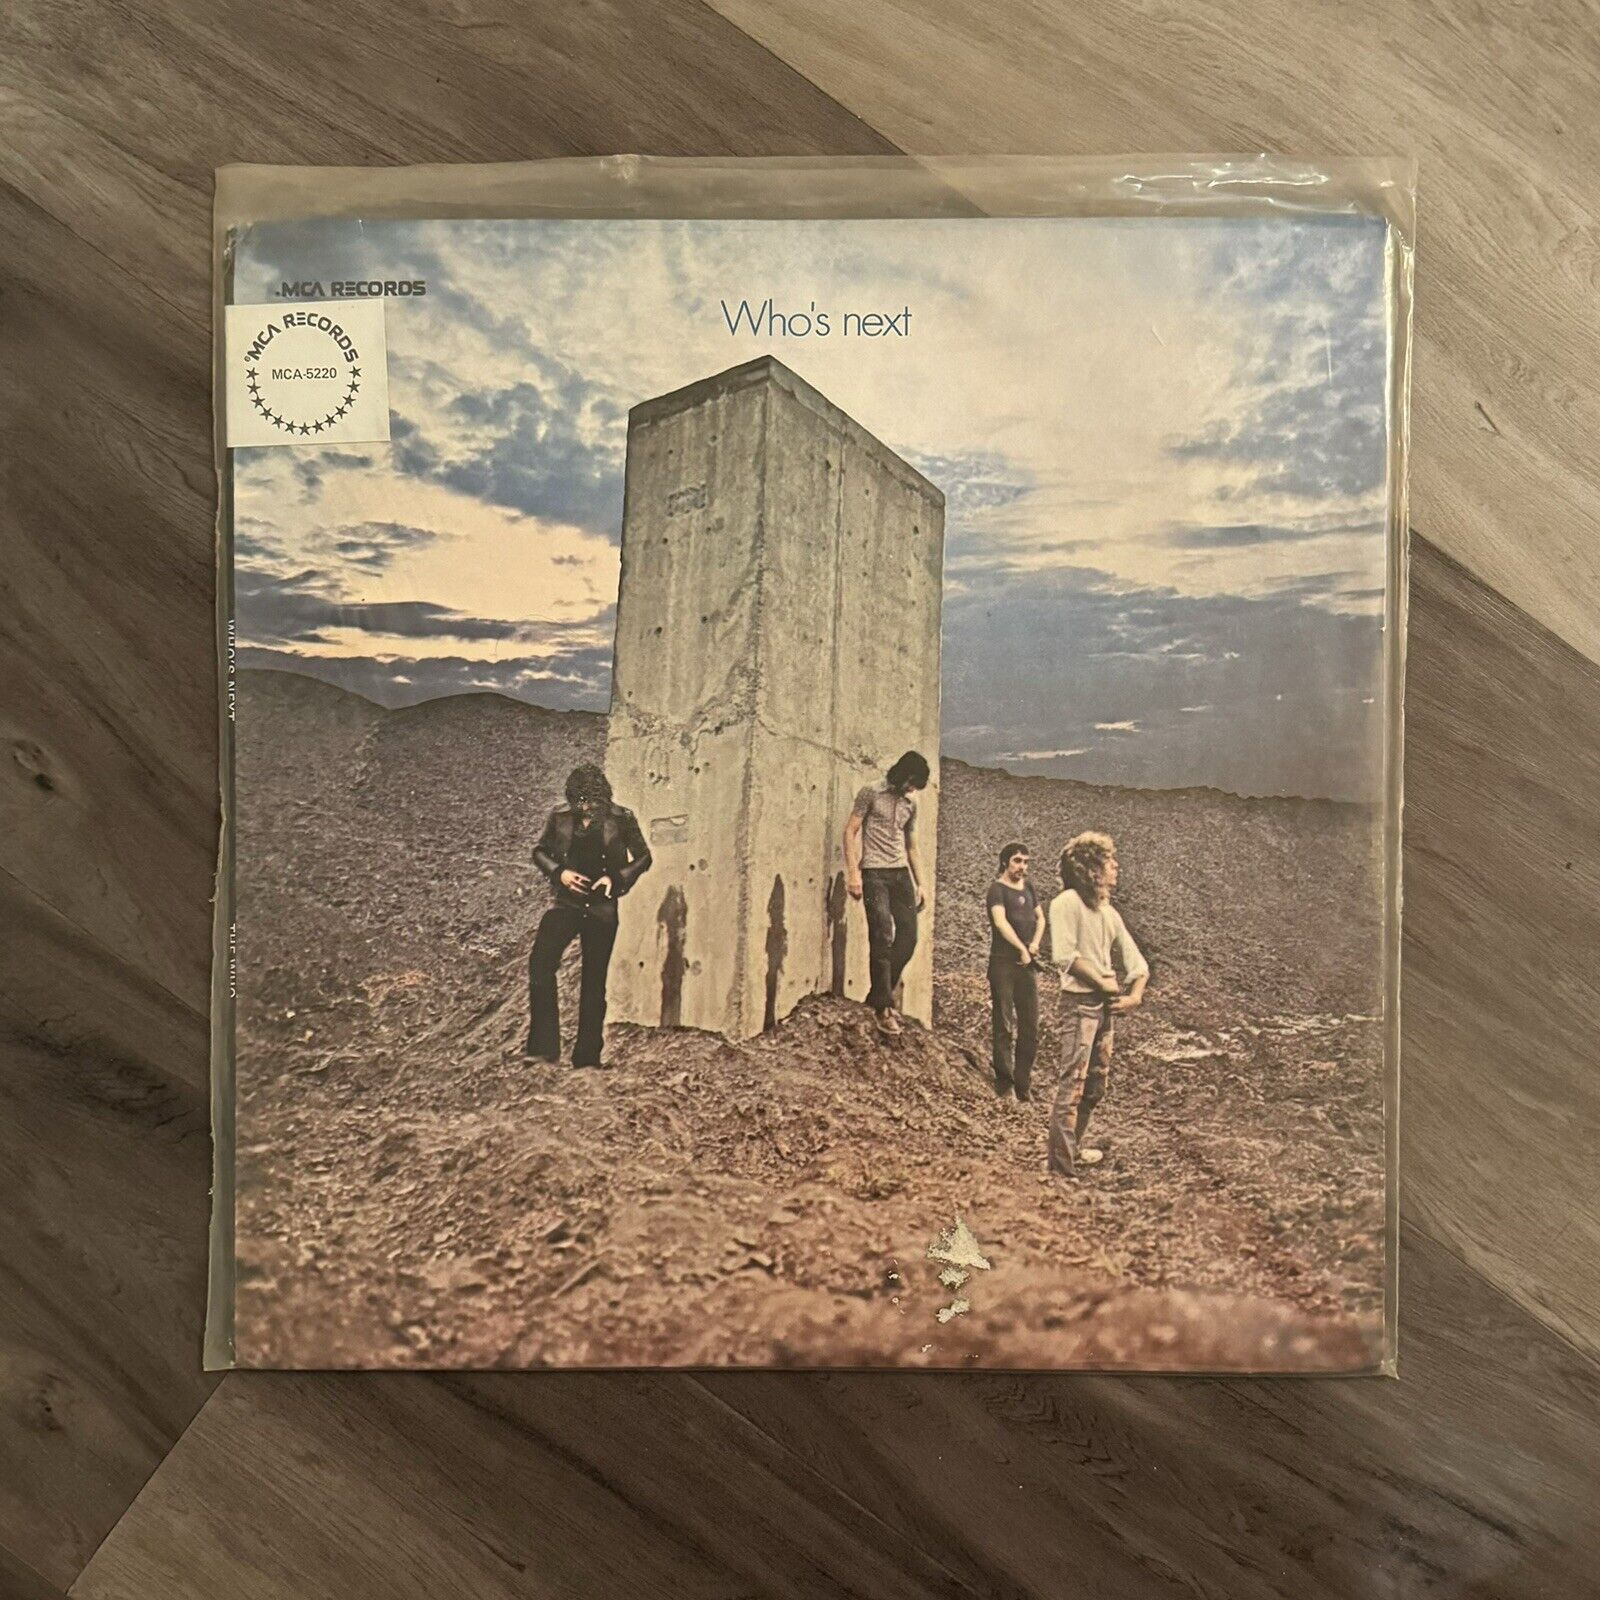 Album The Who Who's Next Record Vinyl LP  MCA-5220